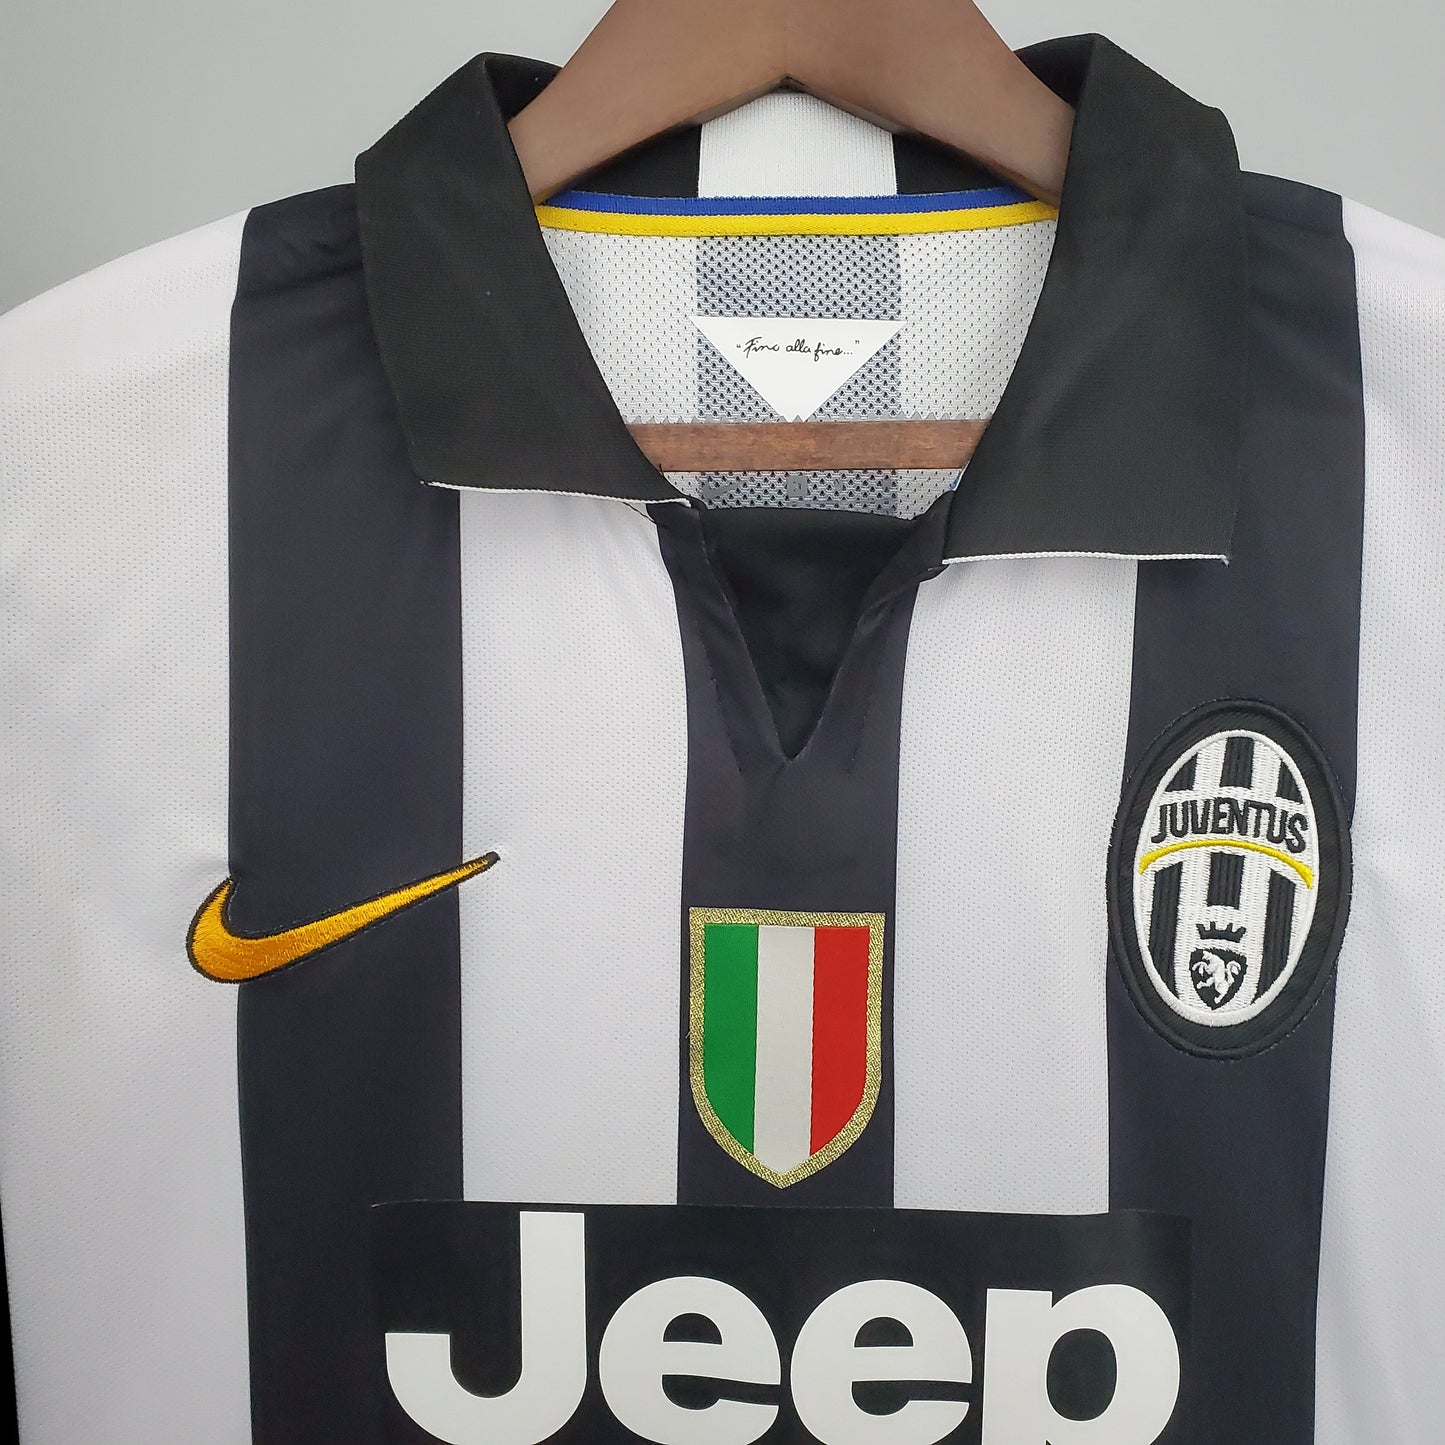 Juventus 2014/2015 Home Kit